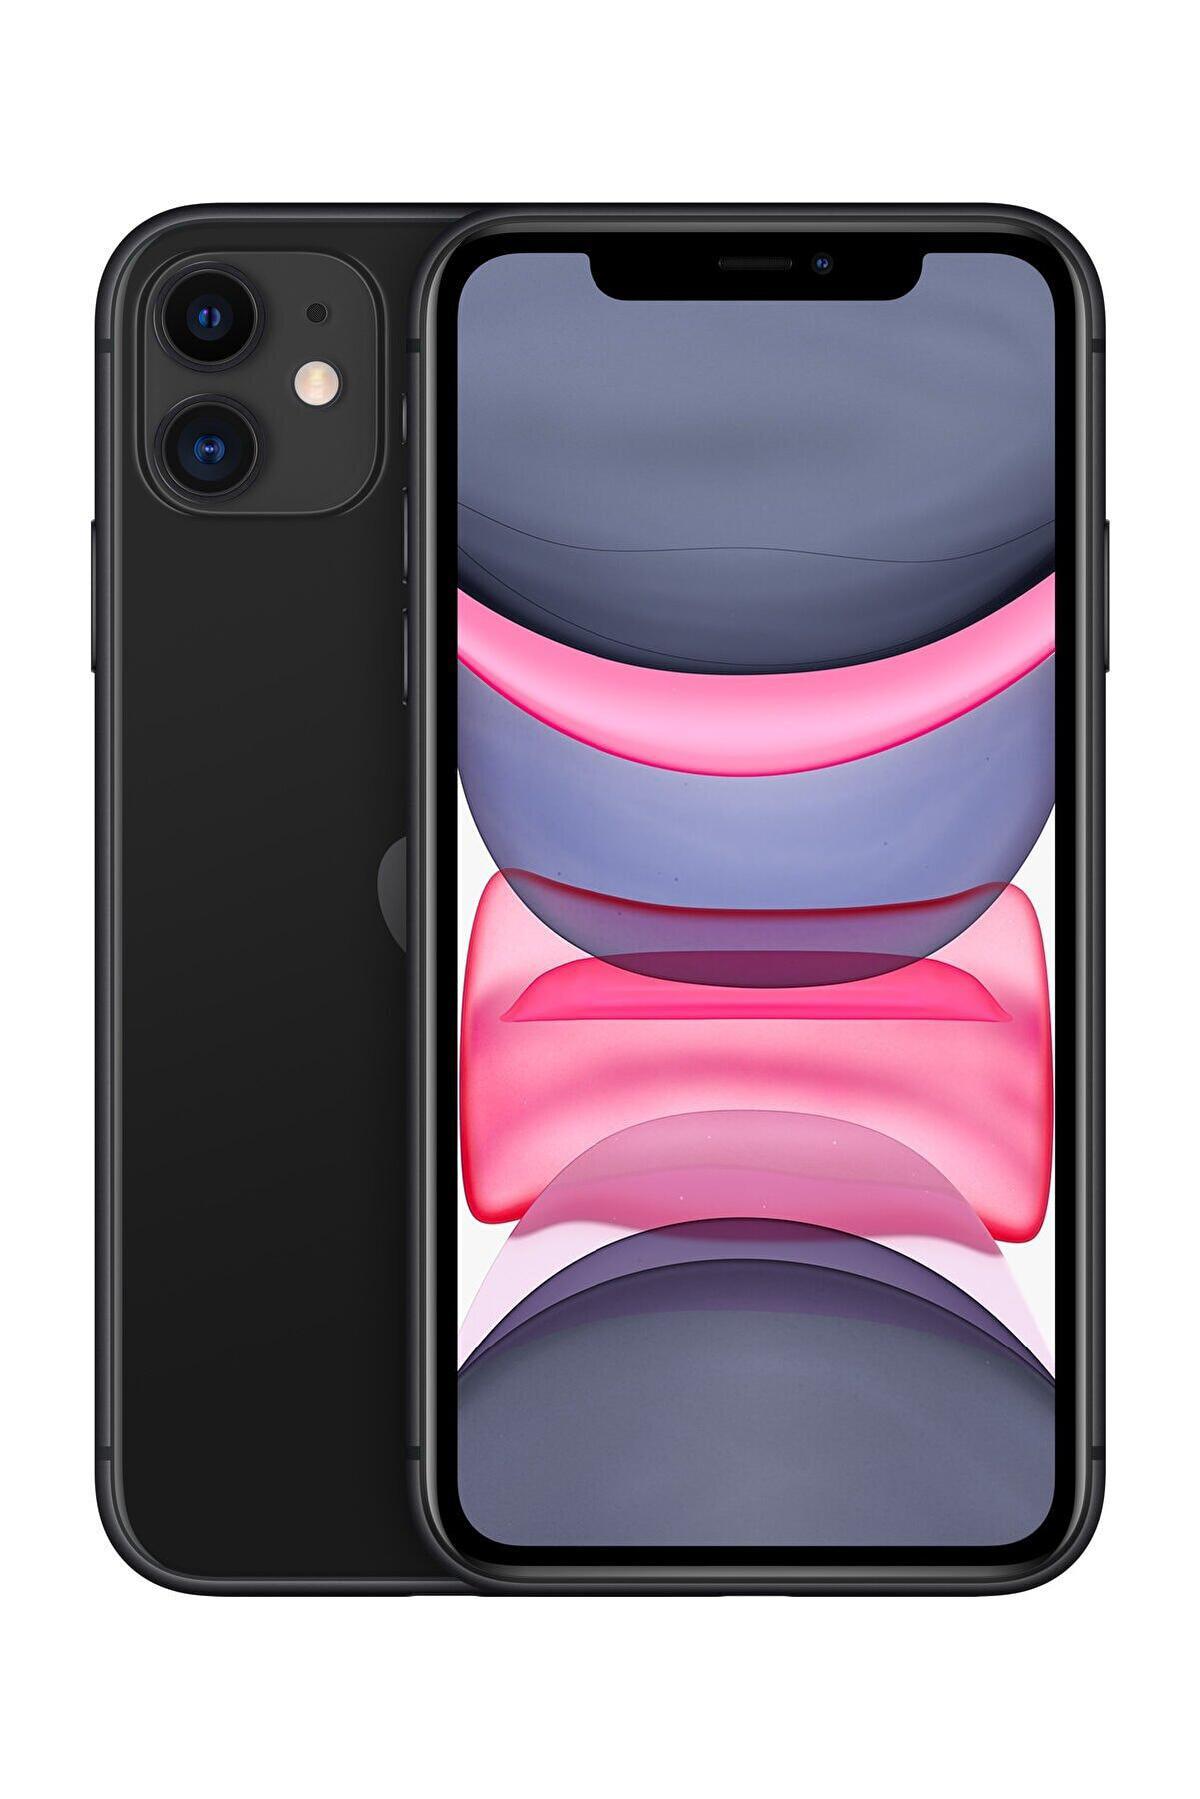 Apple iPhone 11 Siyah 64 GB 4 GB Ram 6.1 inç 12 MP Akıllı Telefon